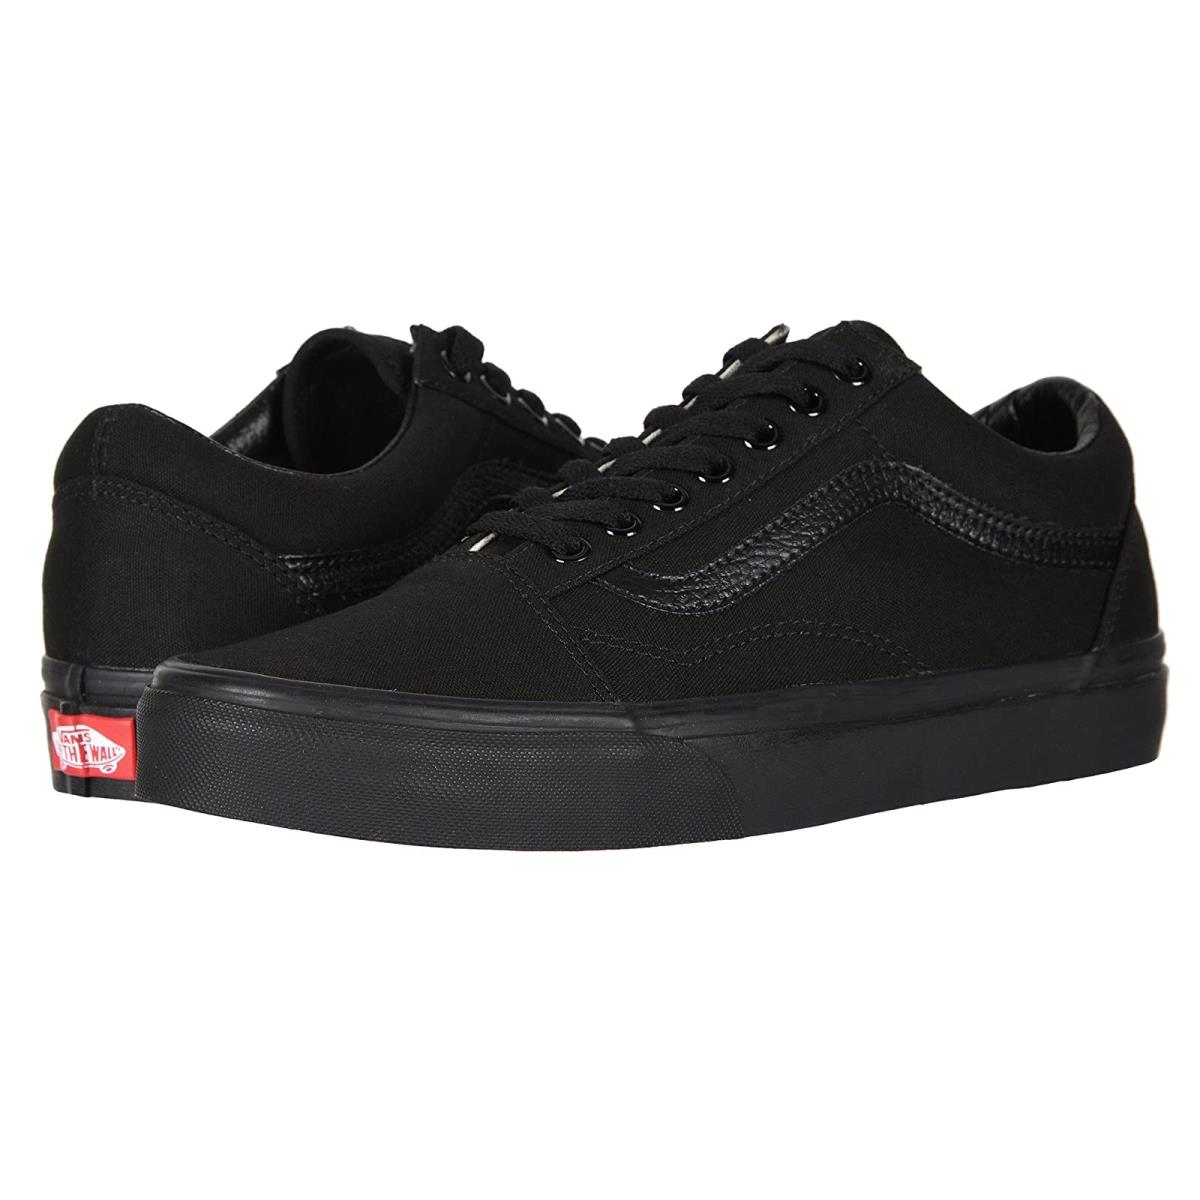 Unisex Sneakers Athletic Shoes Vans Old Skool Core Classics Black/Black